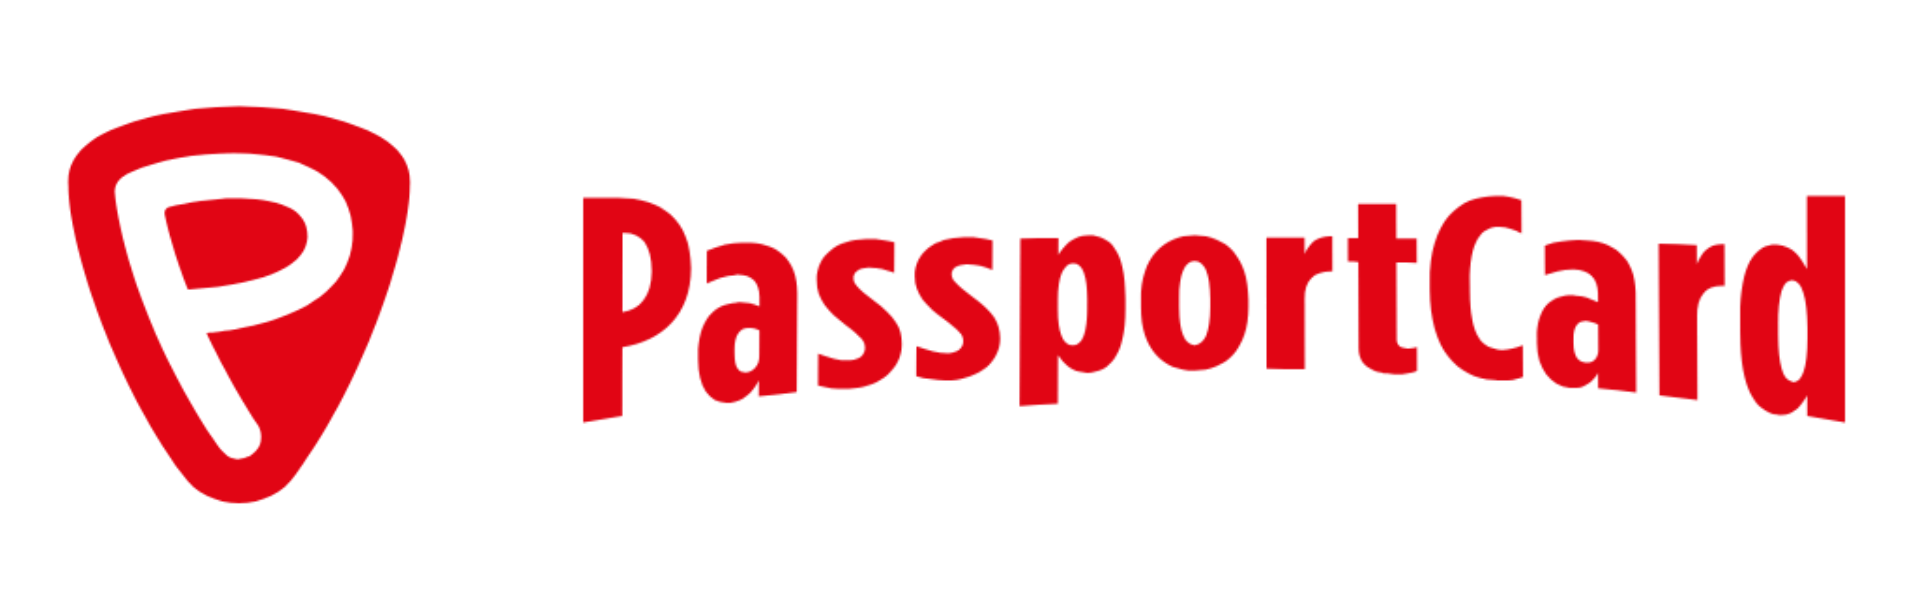 passportcard horizonal